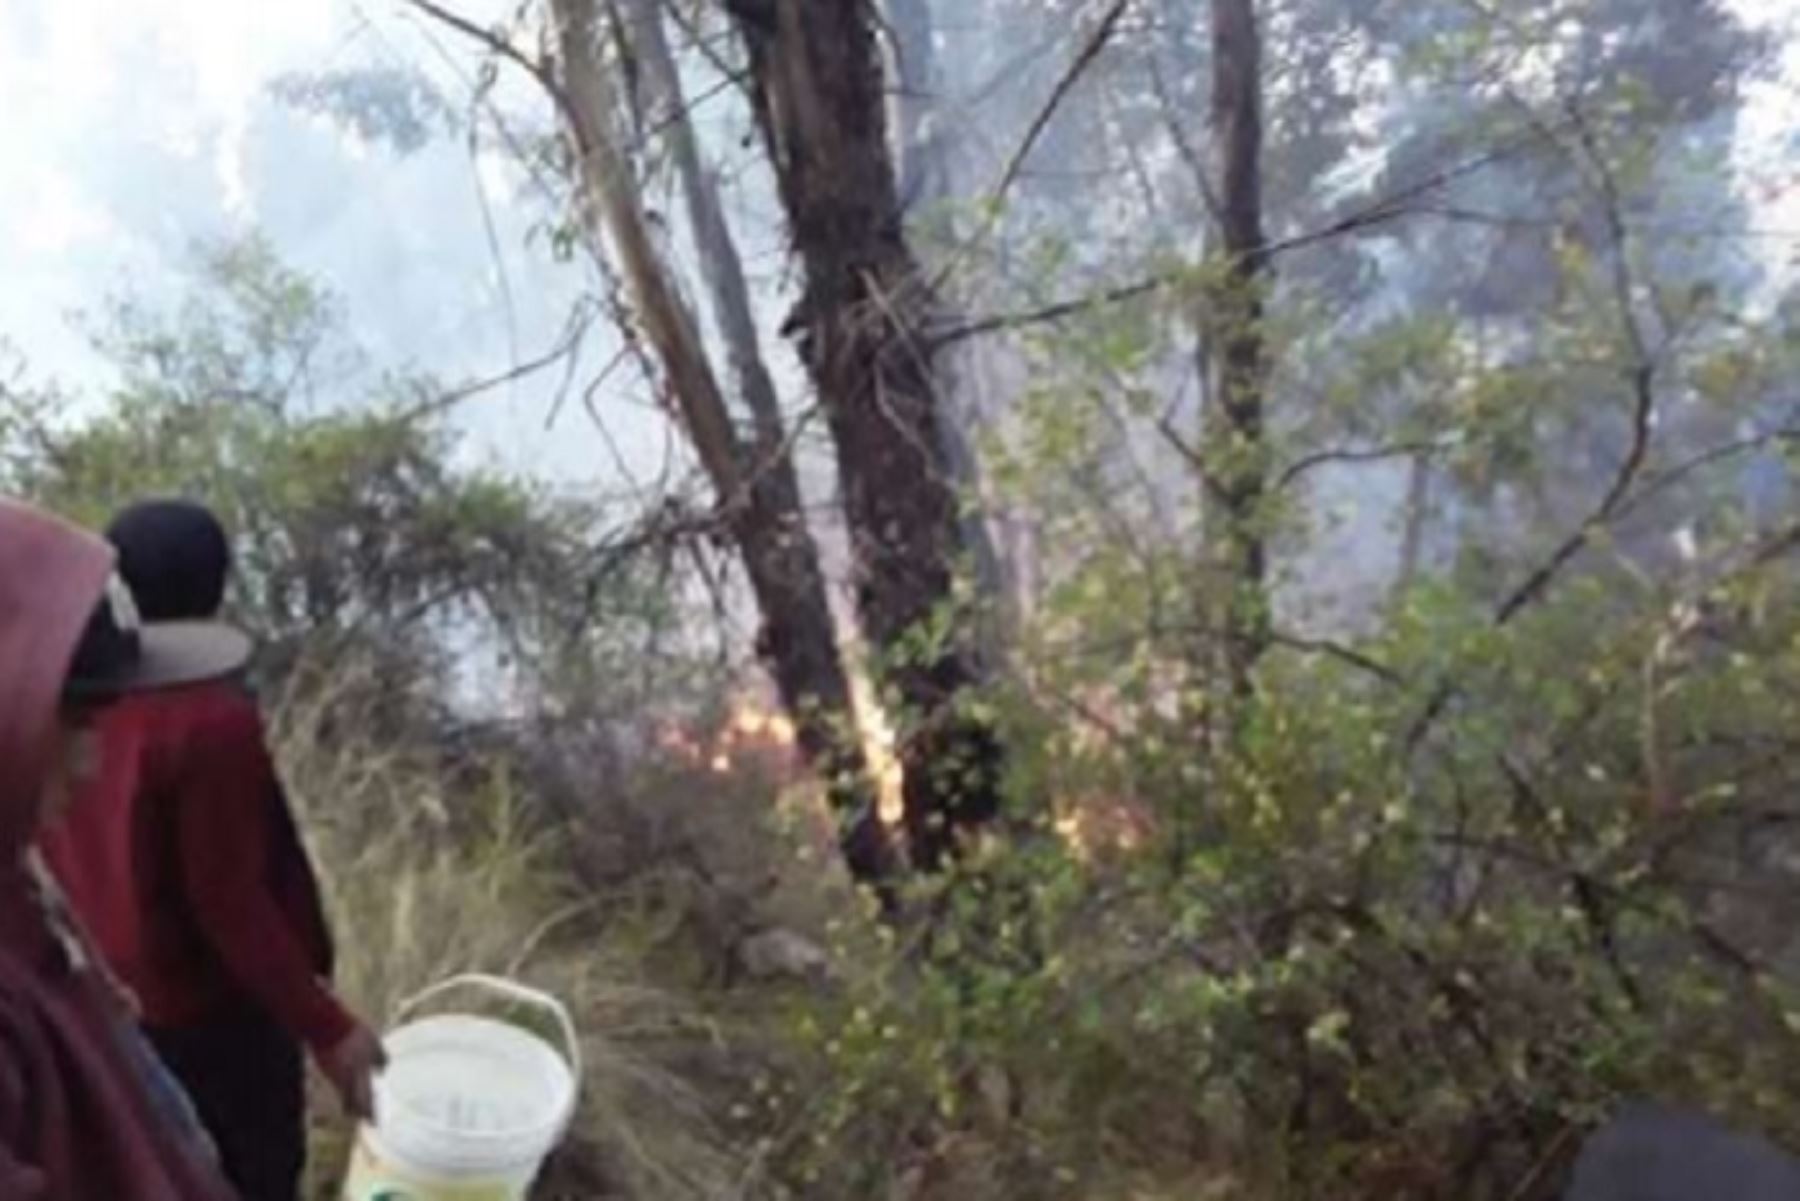 Los incendios forestales registrados en la víspera en las provincias de Acobamba y Huamanga, en las regiones de Huancavelica y Ayacucho, han dejado hasta dejado hasta el momento 27 hectáreas de cobertura natural destruida, informó el Instituto Nacional de Defensa Civil (Indeci).